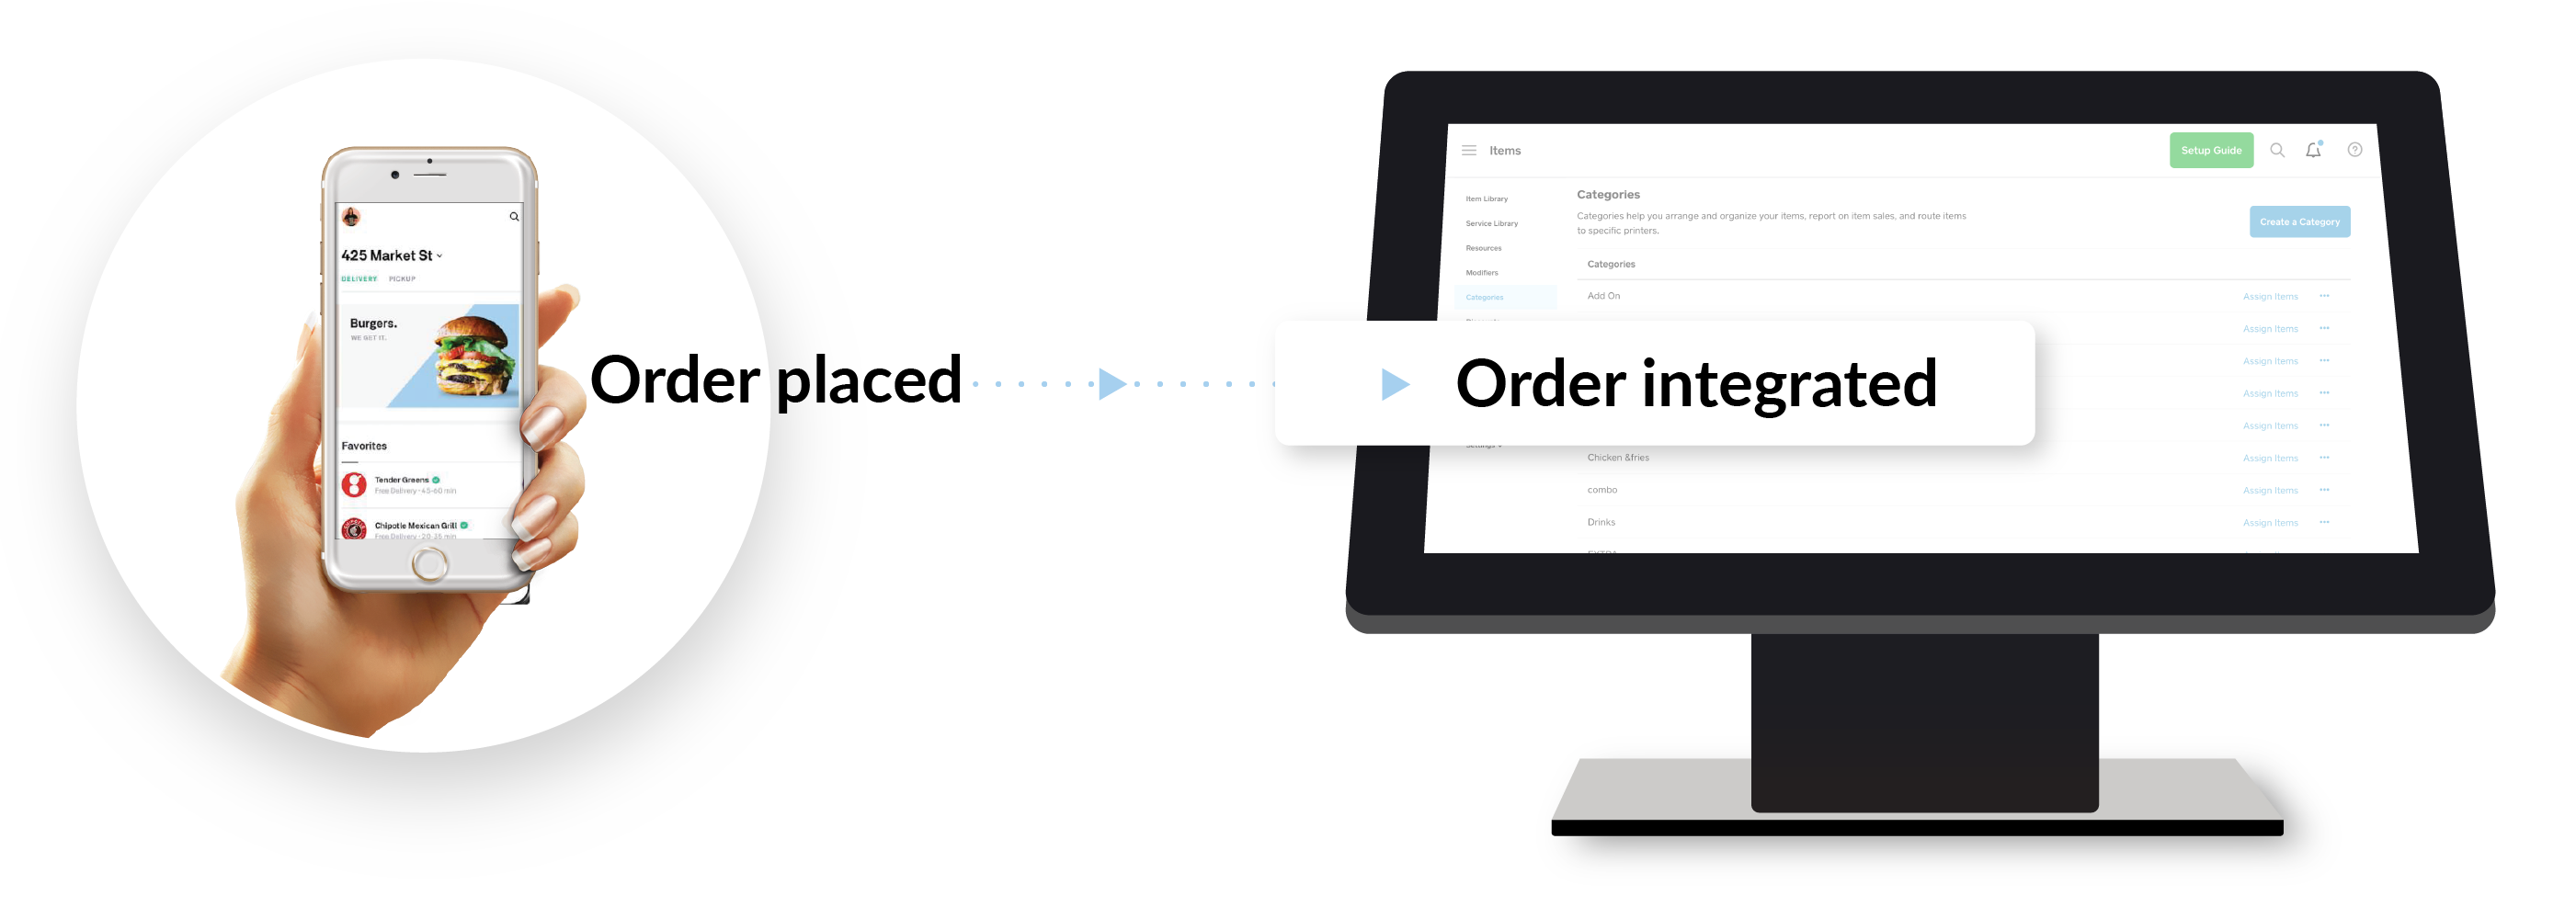 order integration-01